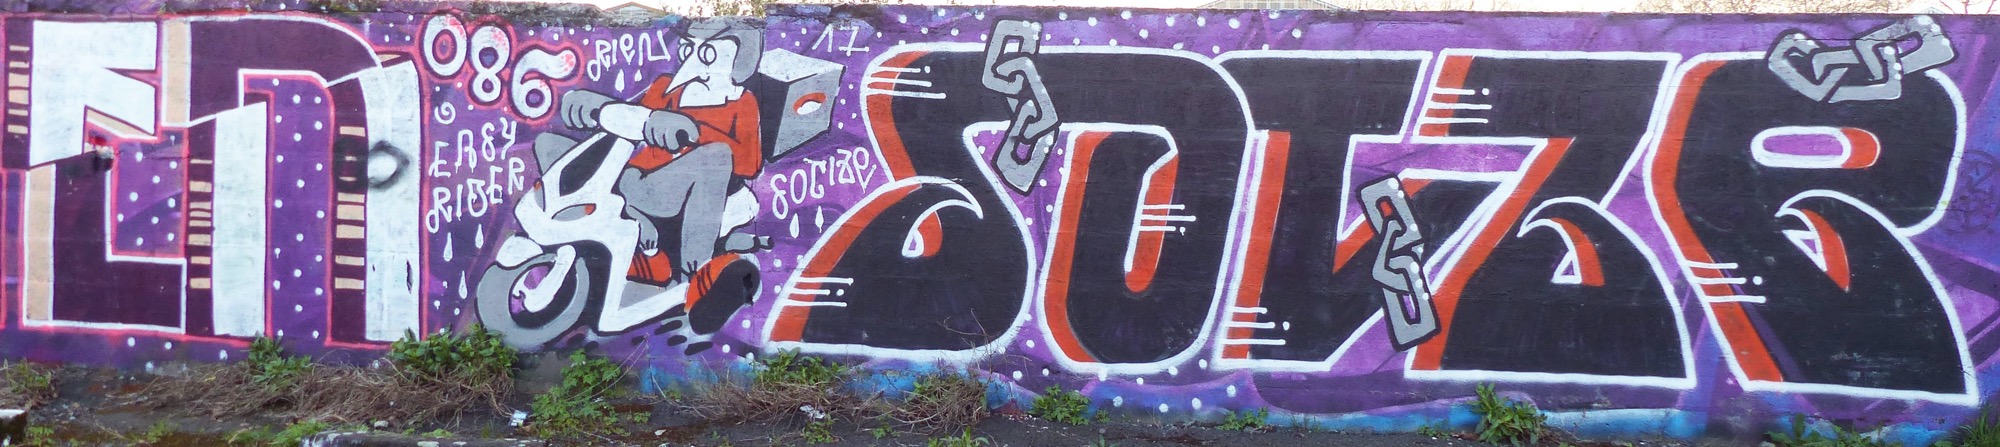 Graffiti 25  capturé par Rabot à Nantes France